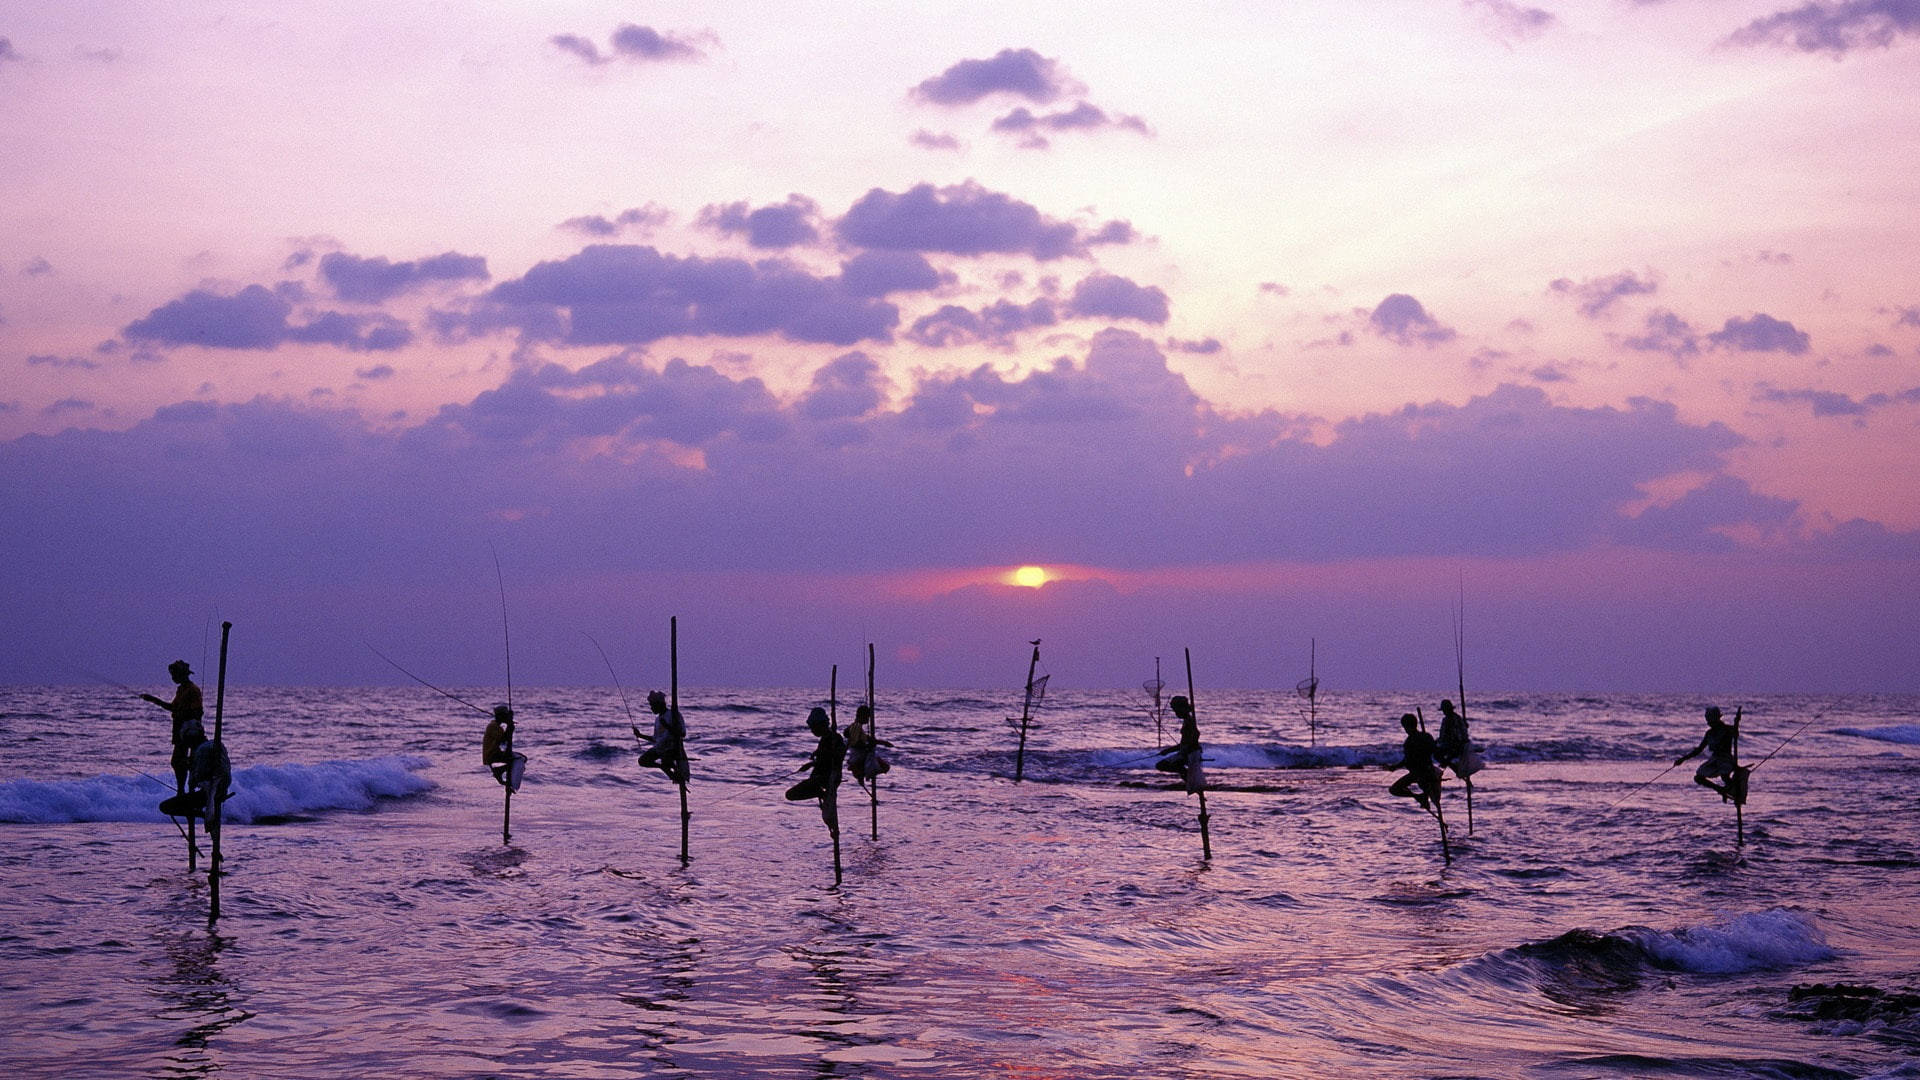 Sri Lanka Stilt Fishing Sunset Picture